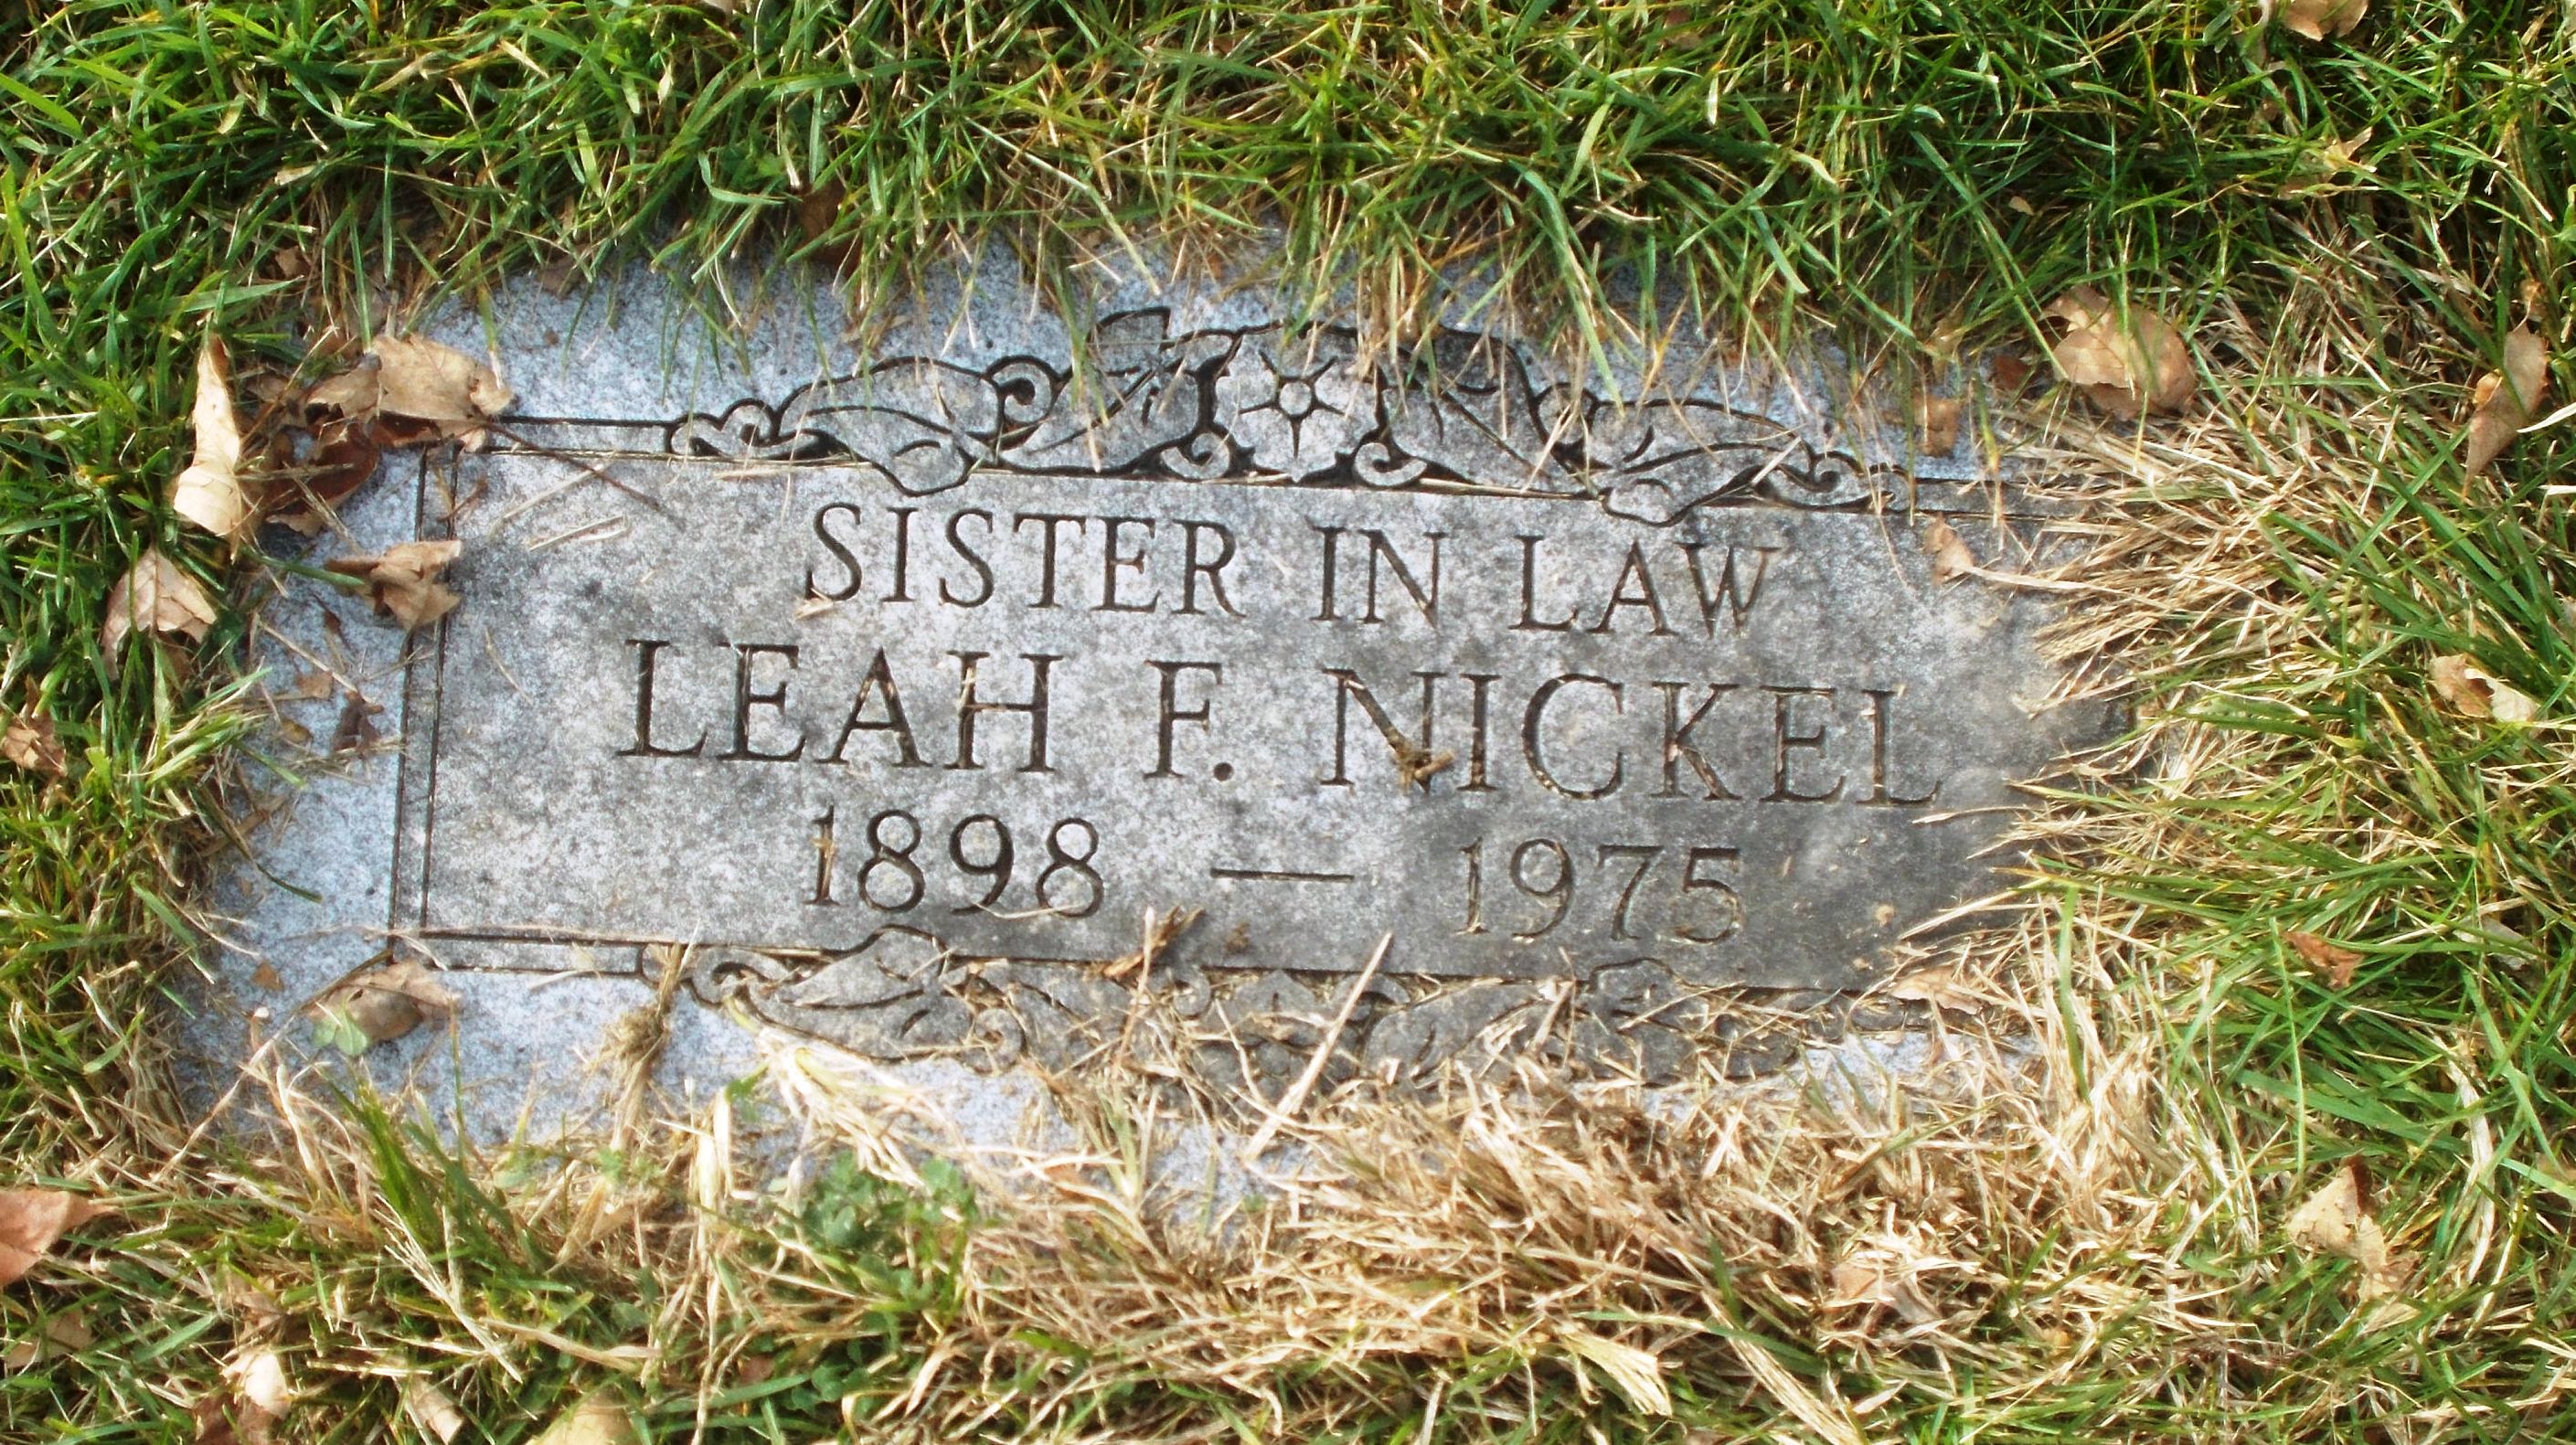 Leah F Nickel